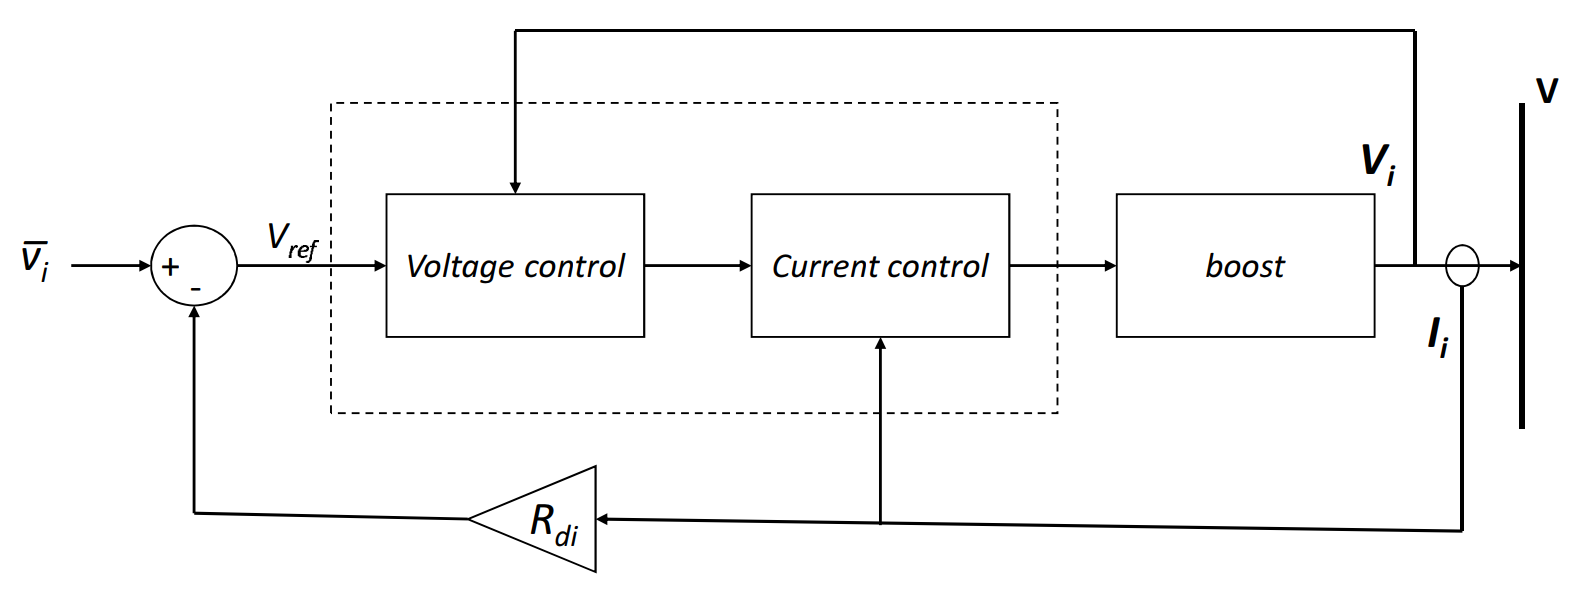 Droop control loop at each generator